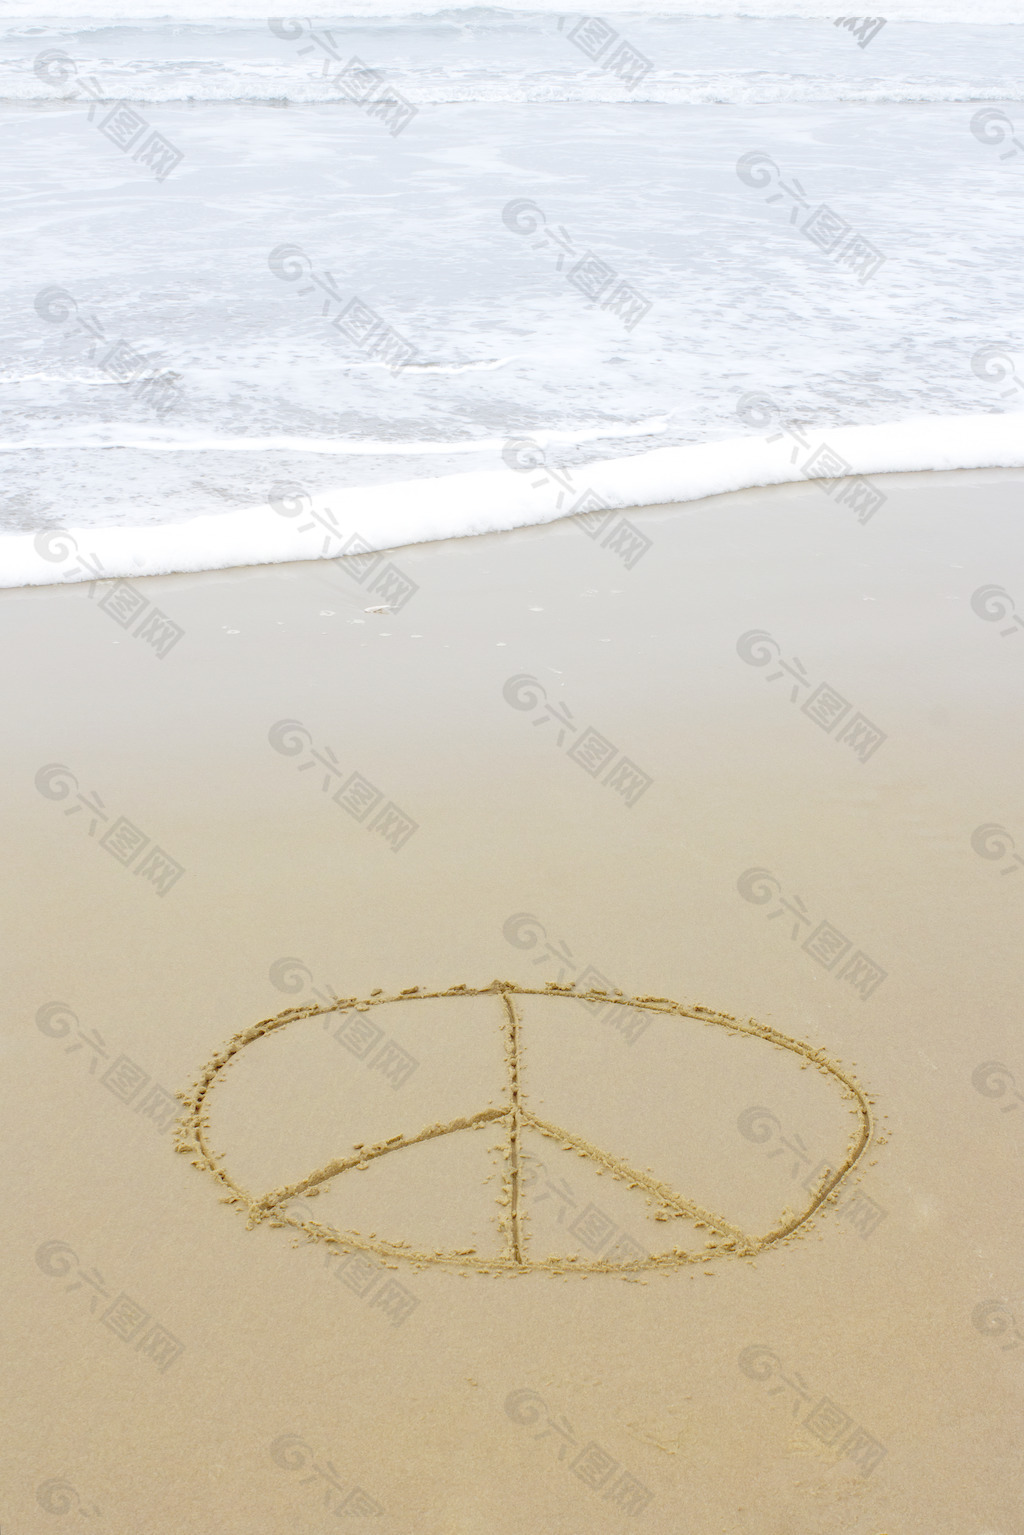 和平标志画在海滩